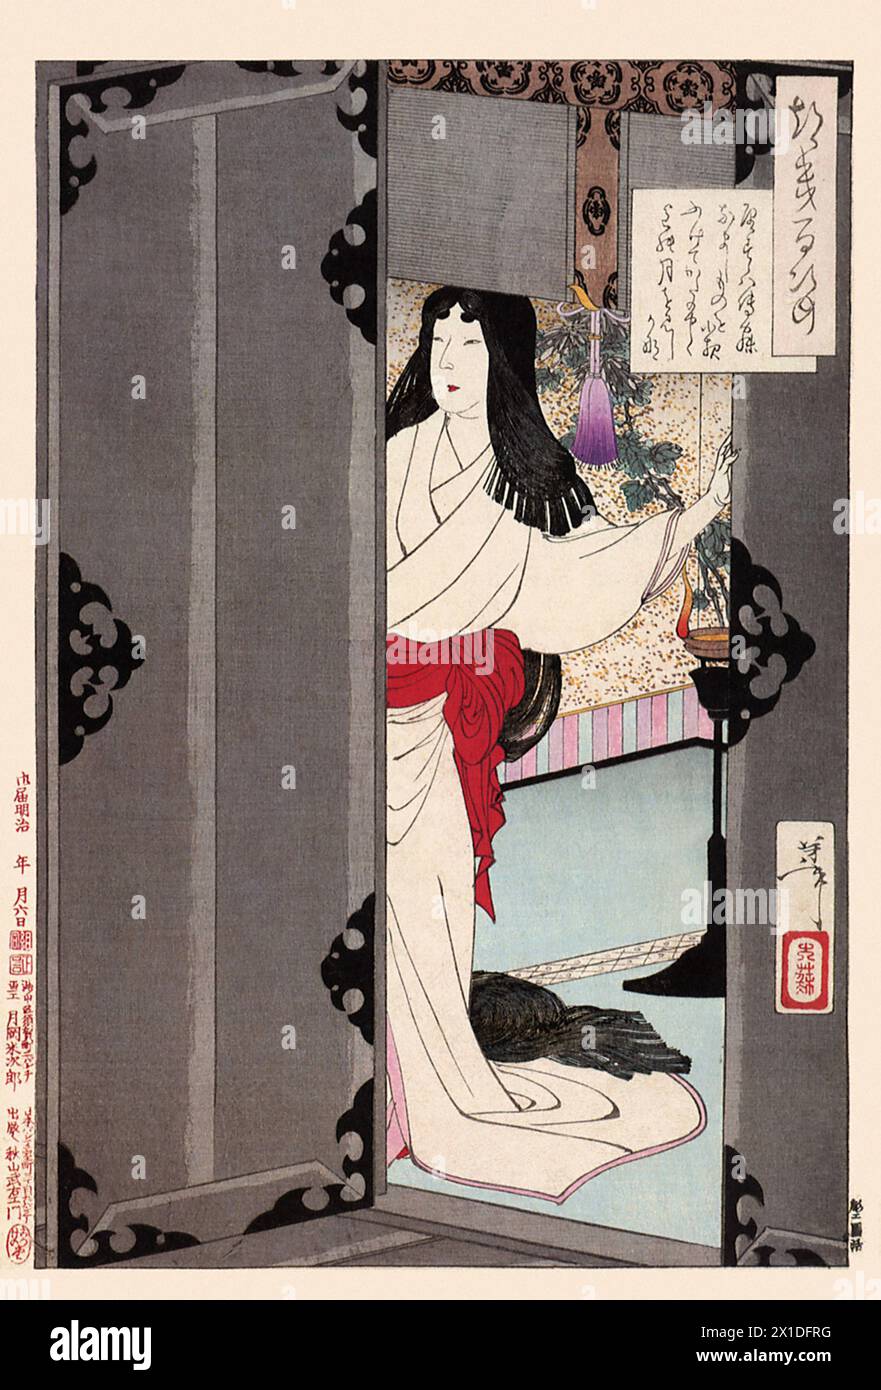 Tsukioka Yoshitoshi 1839 bis 9. Juni 1892 einer der letzten großen Meister des klassischen japanischen Farbholzschnitt, hier das Werk I Wish I Had Gone to Bed Immediately Stock Photo